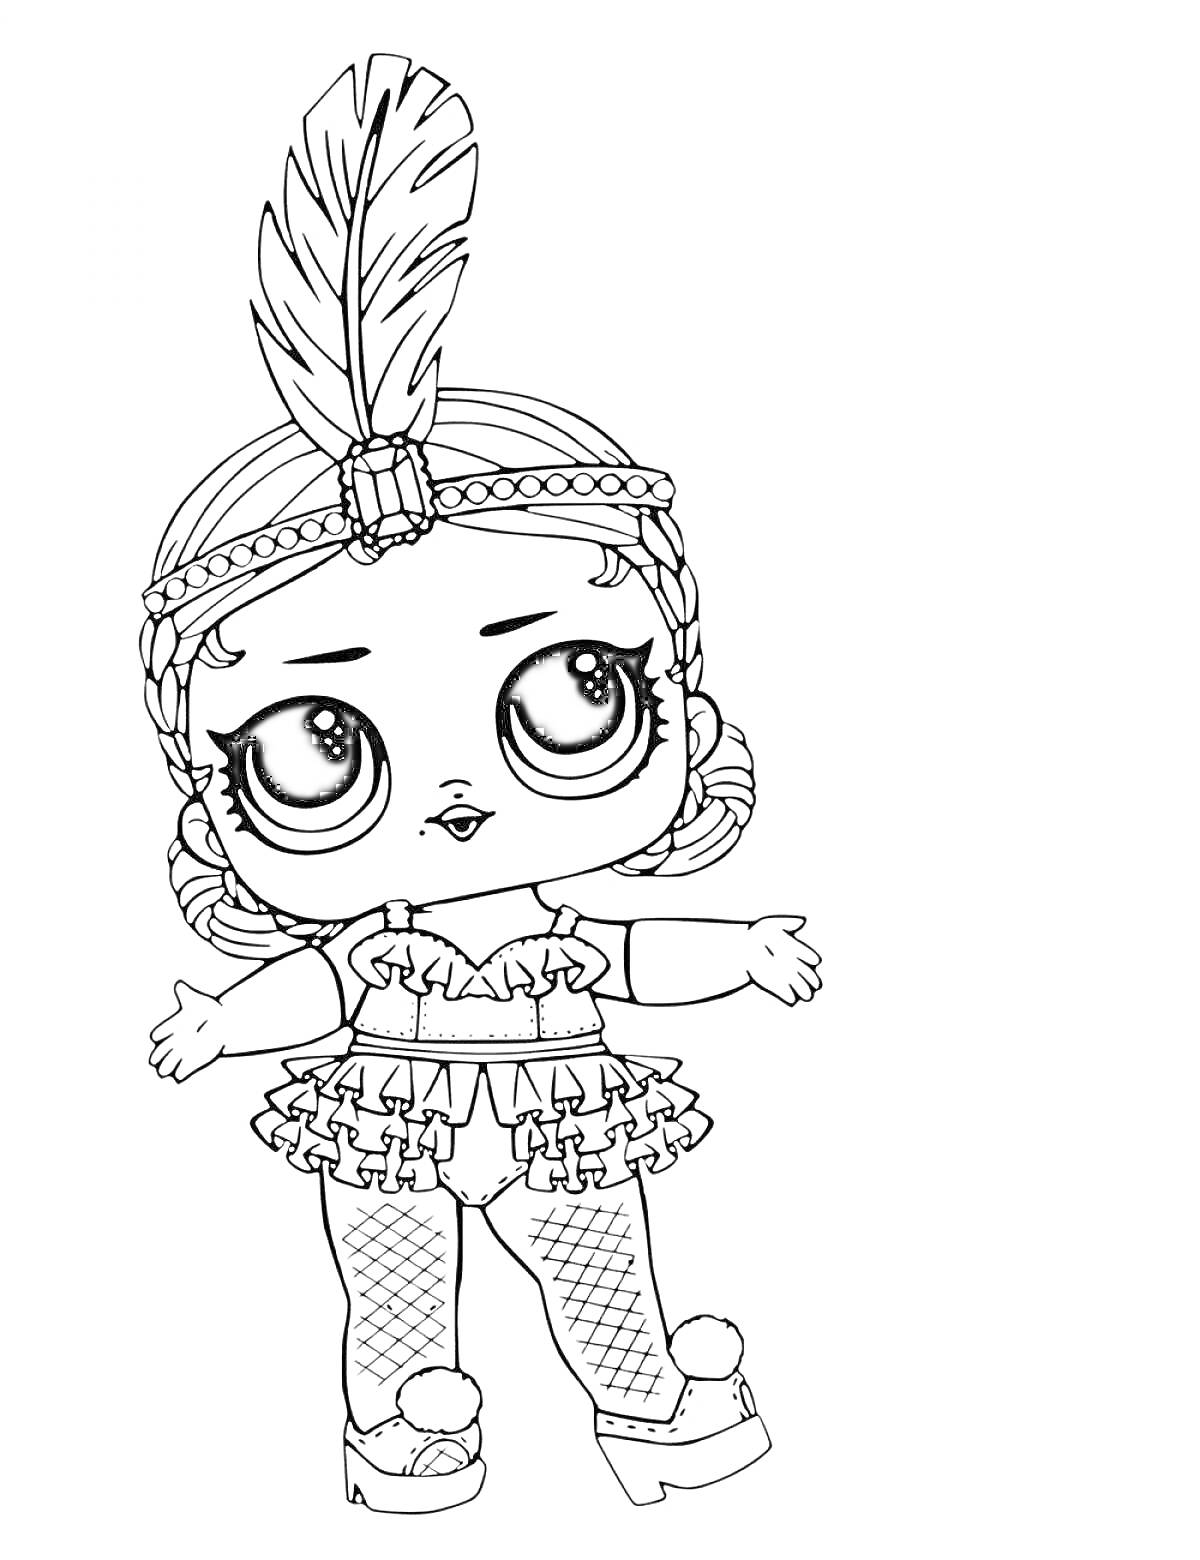 Раскраска Кукла лол с пером на голове, в юбке с рюшами и ботинках с помпонами